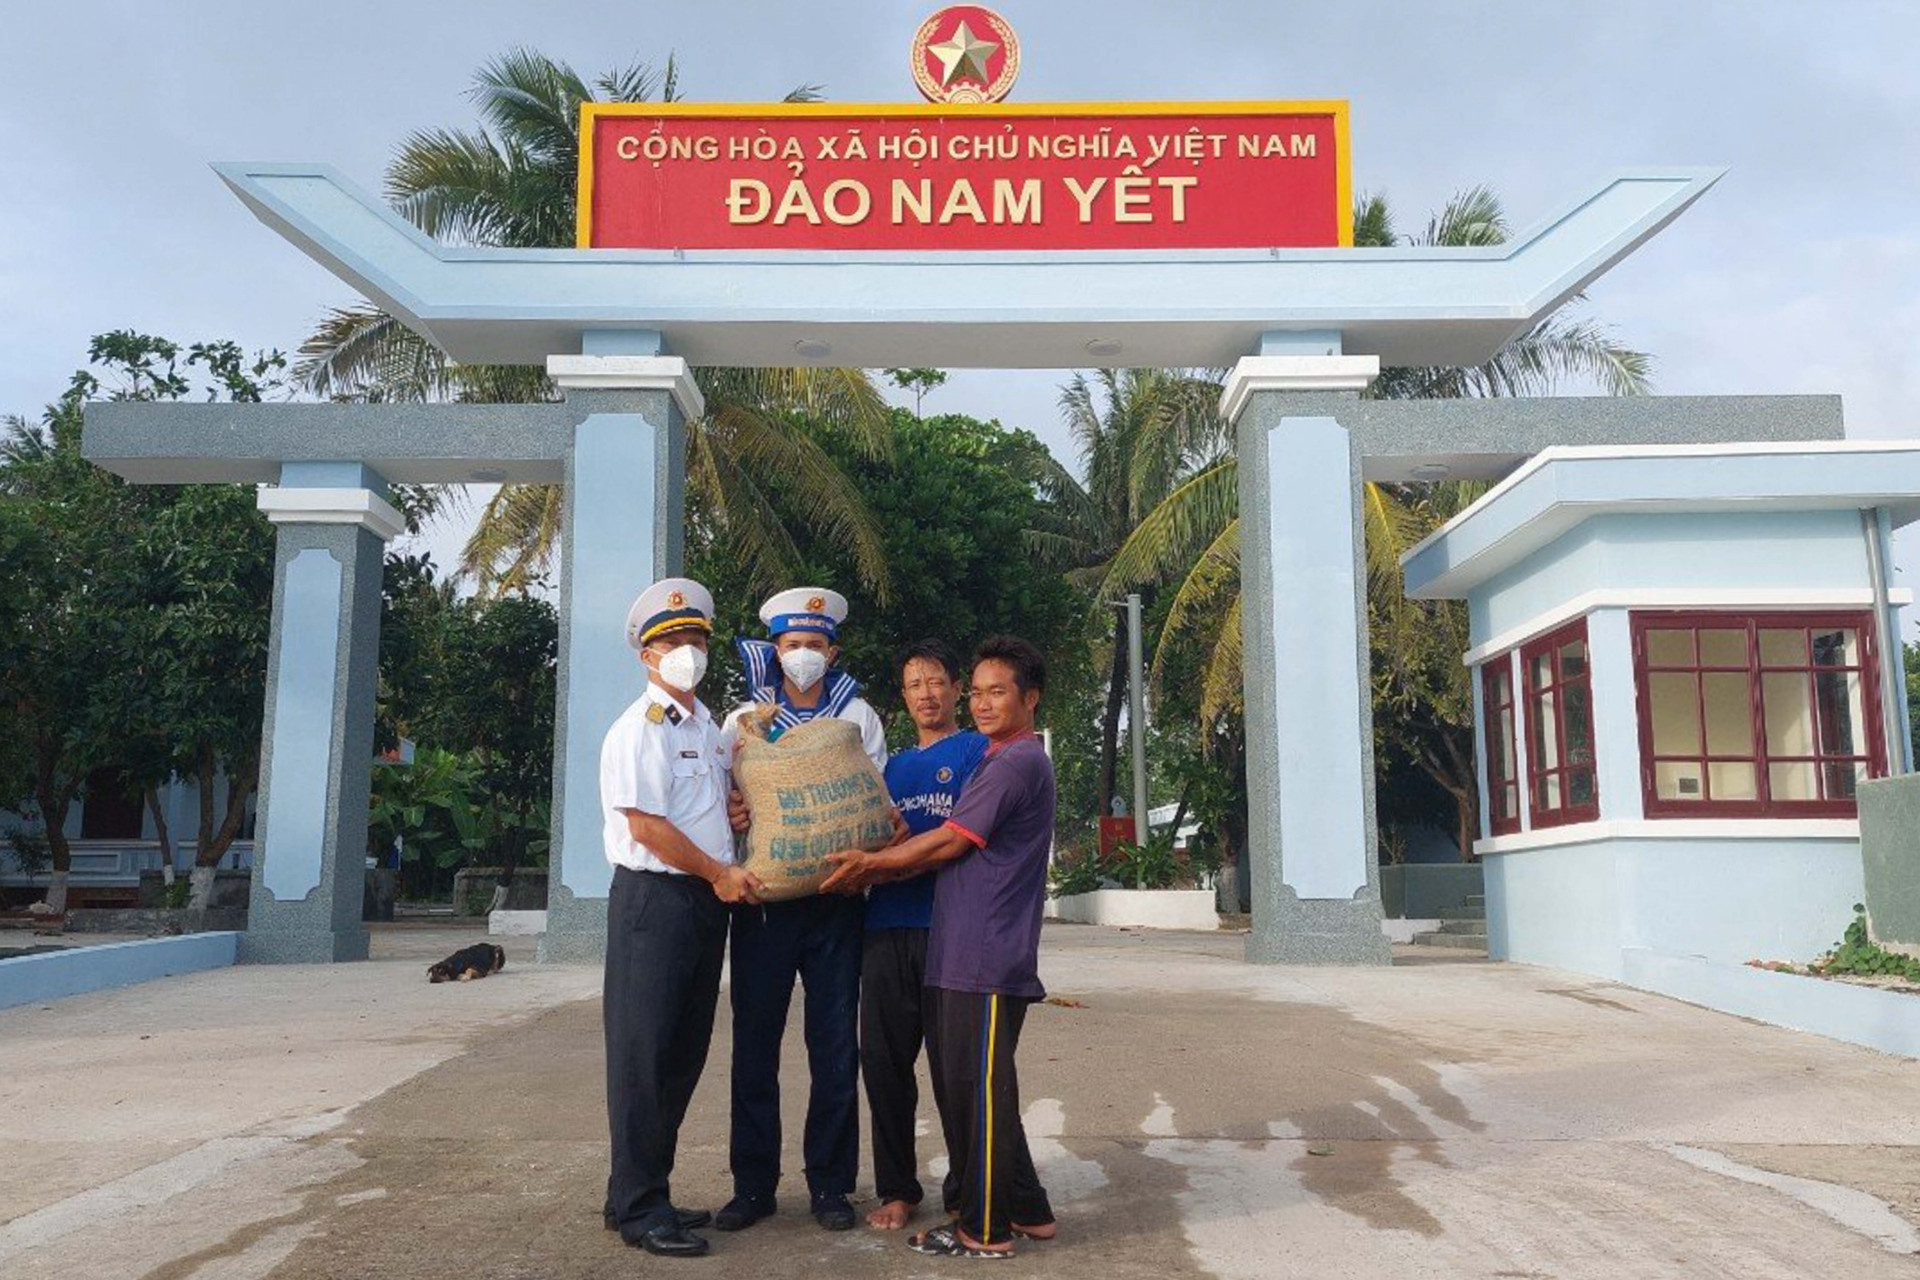 Cán bộ, chiến sĩ đảo Nam Yết tặng quà hỗ trợ ngư dân trên tàu cá QNg 94848 TS